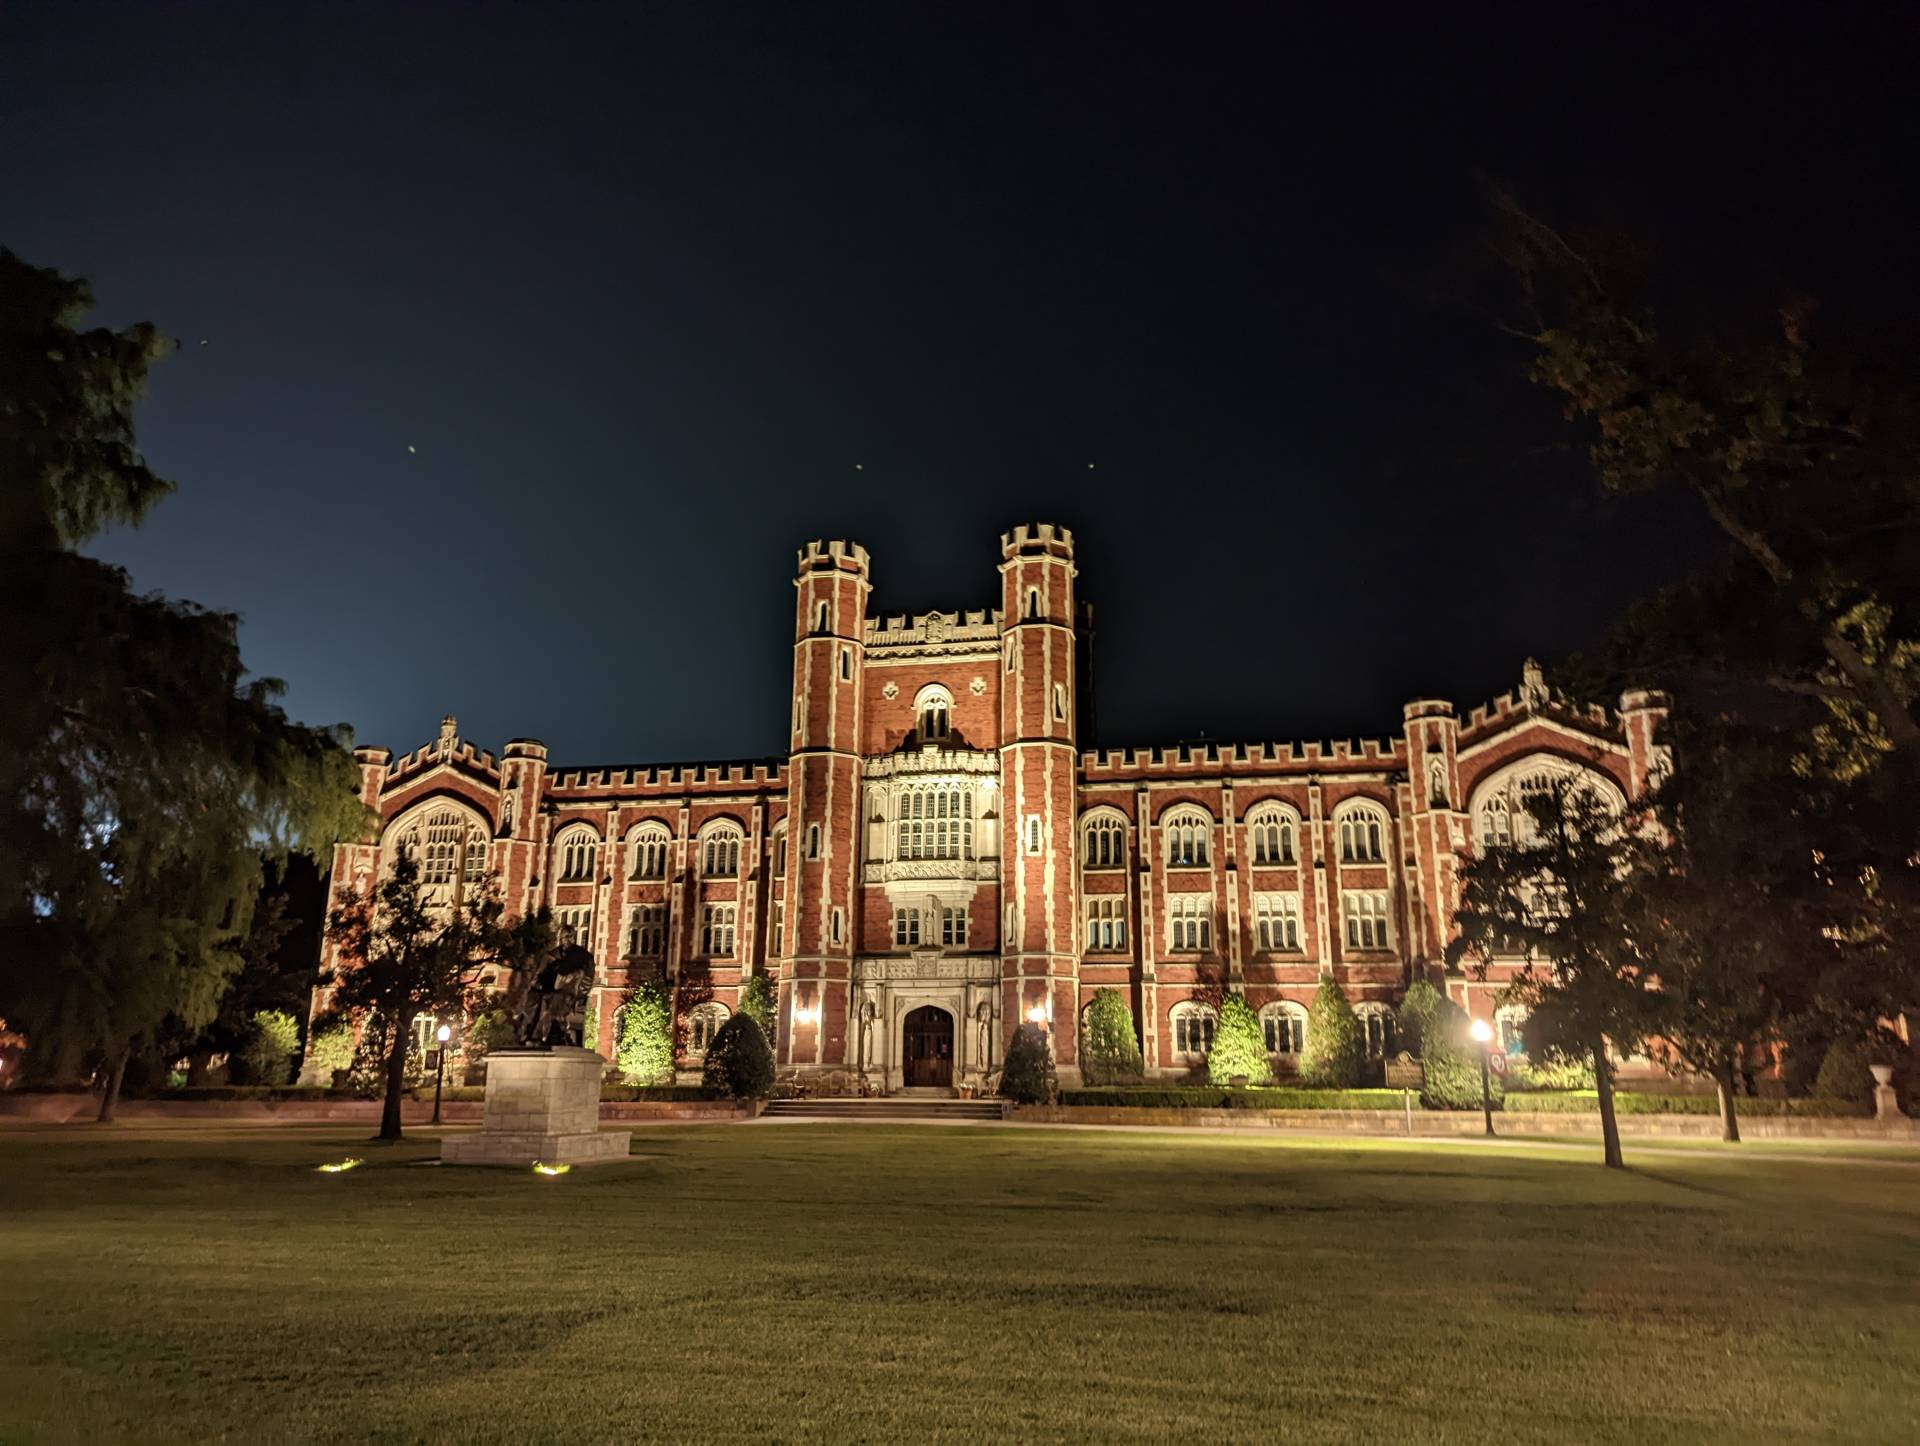 Campus der University of Oklahoma bei Nacht